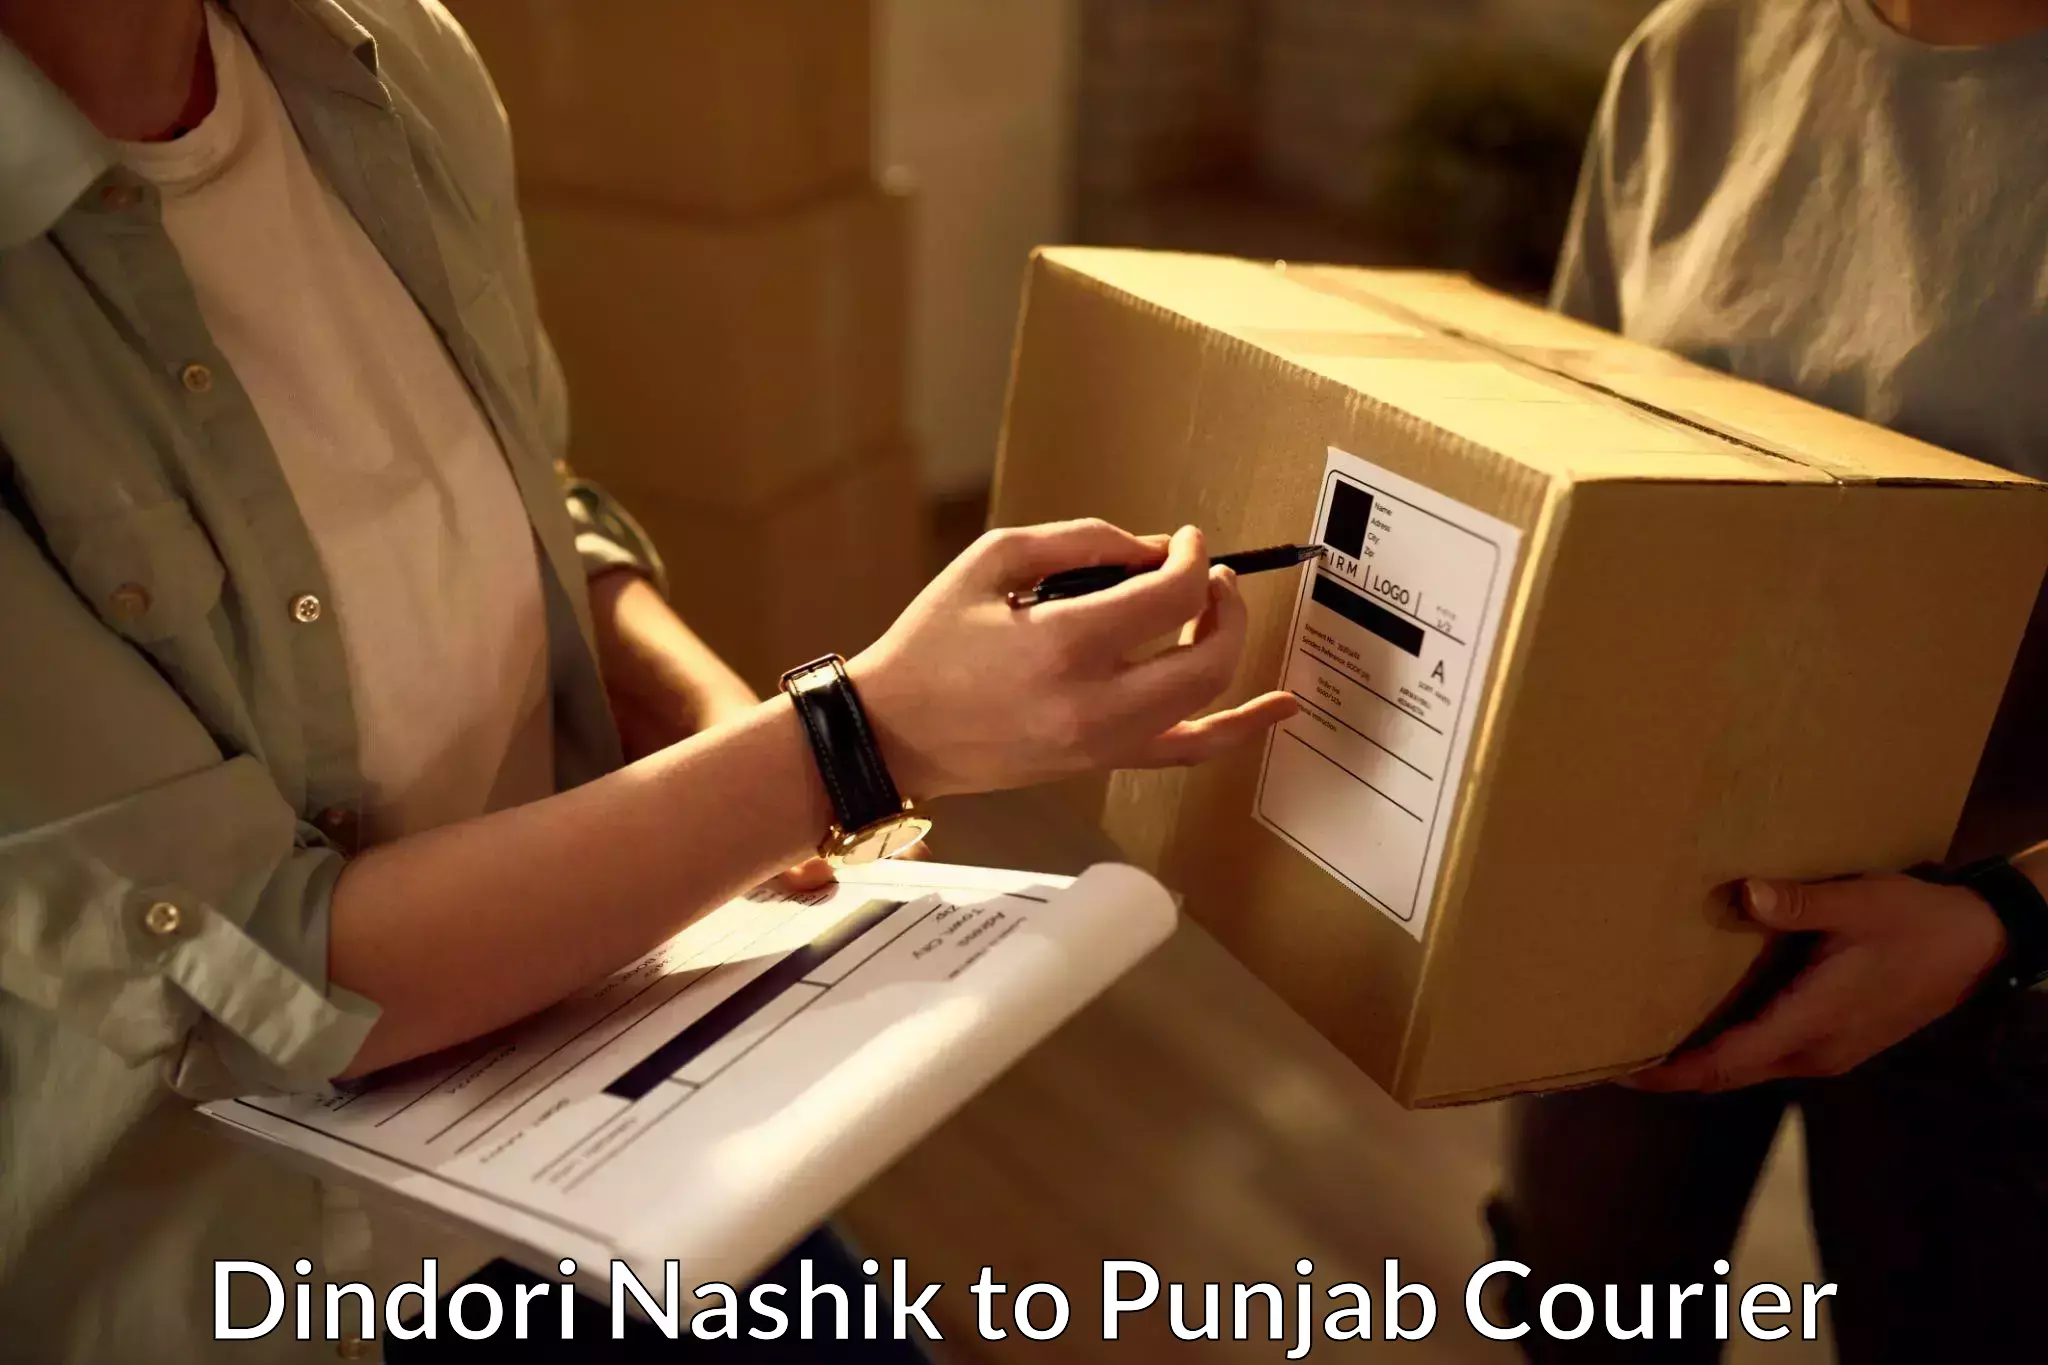 Customer-focused courier Dindori Nashik to Punjab